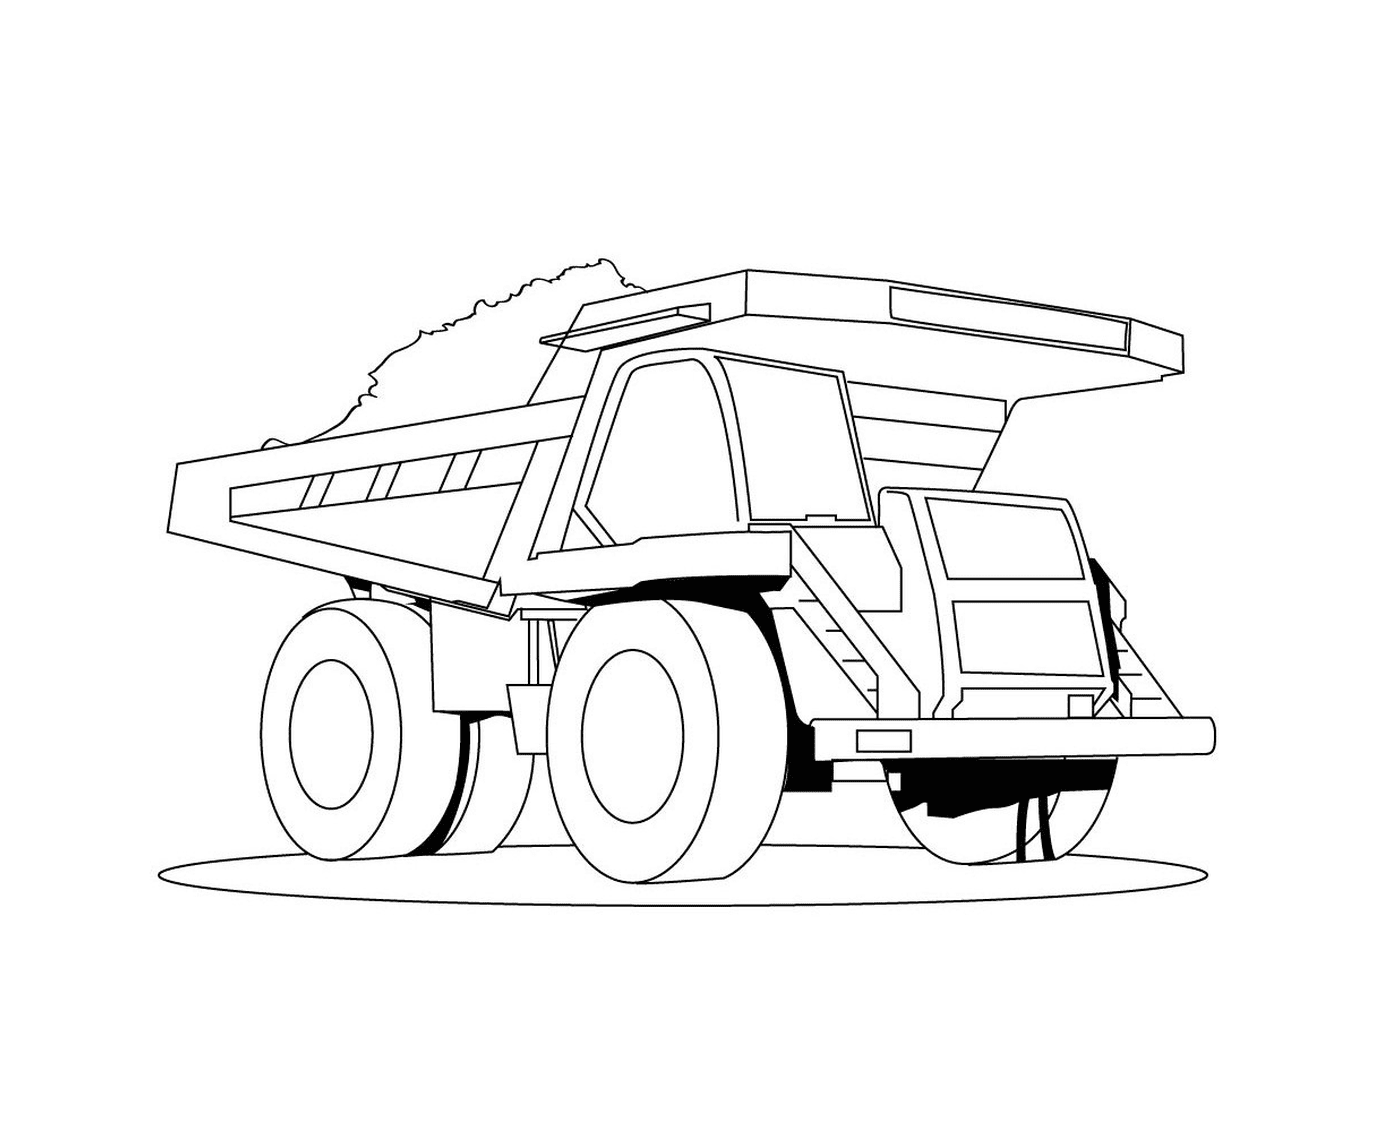  A dumpster truck 